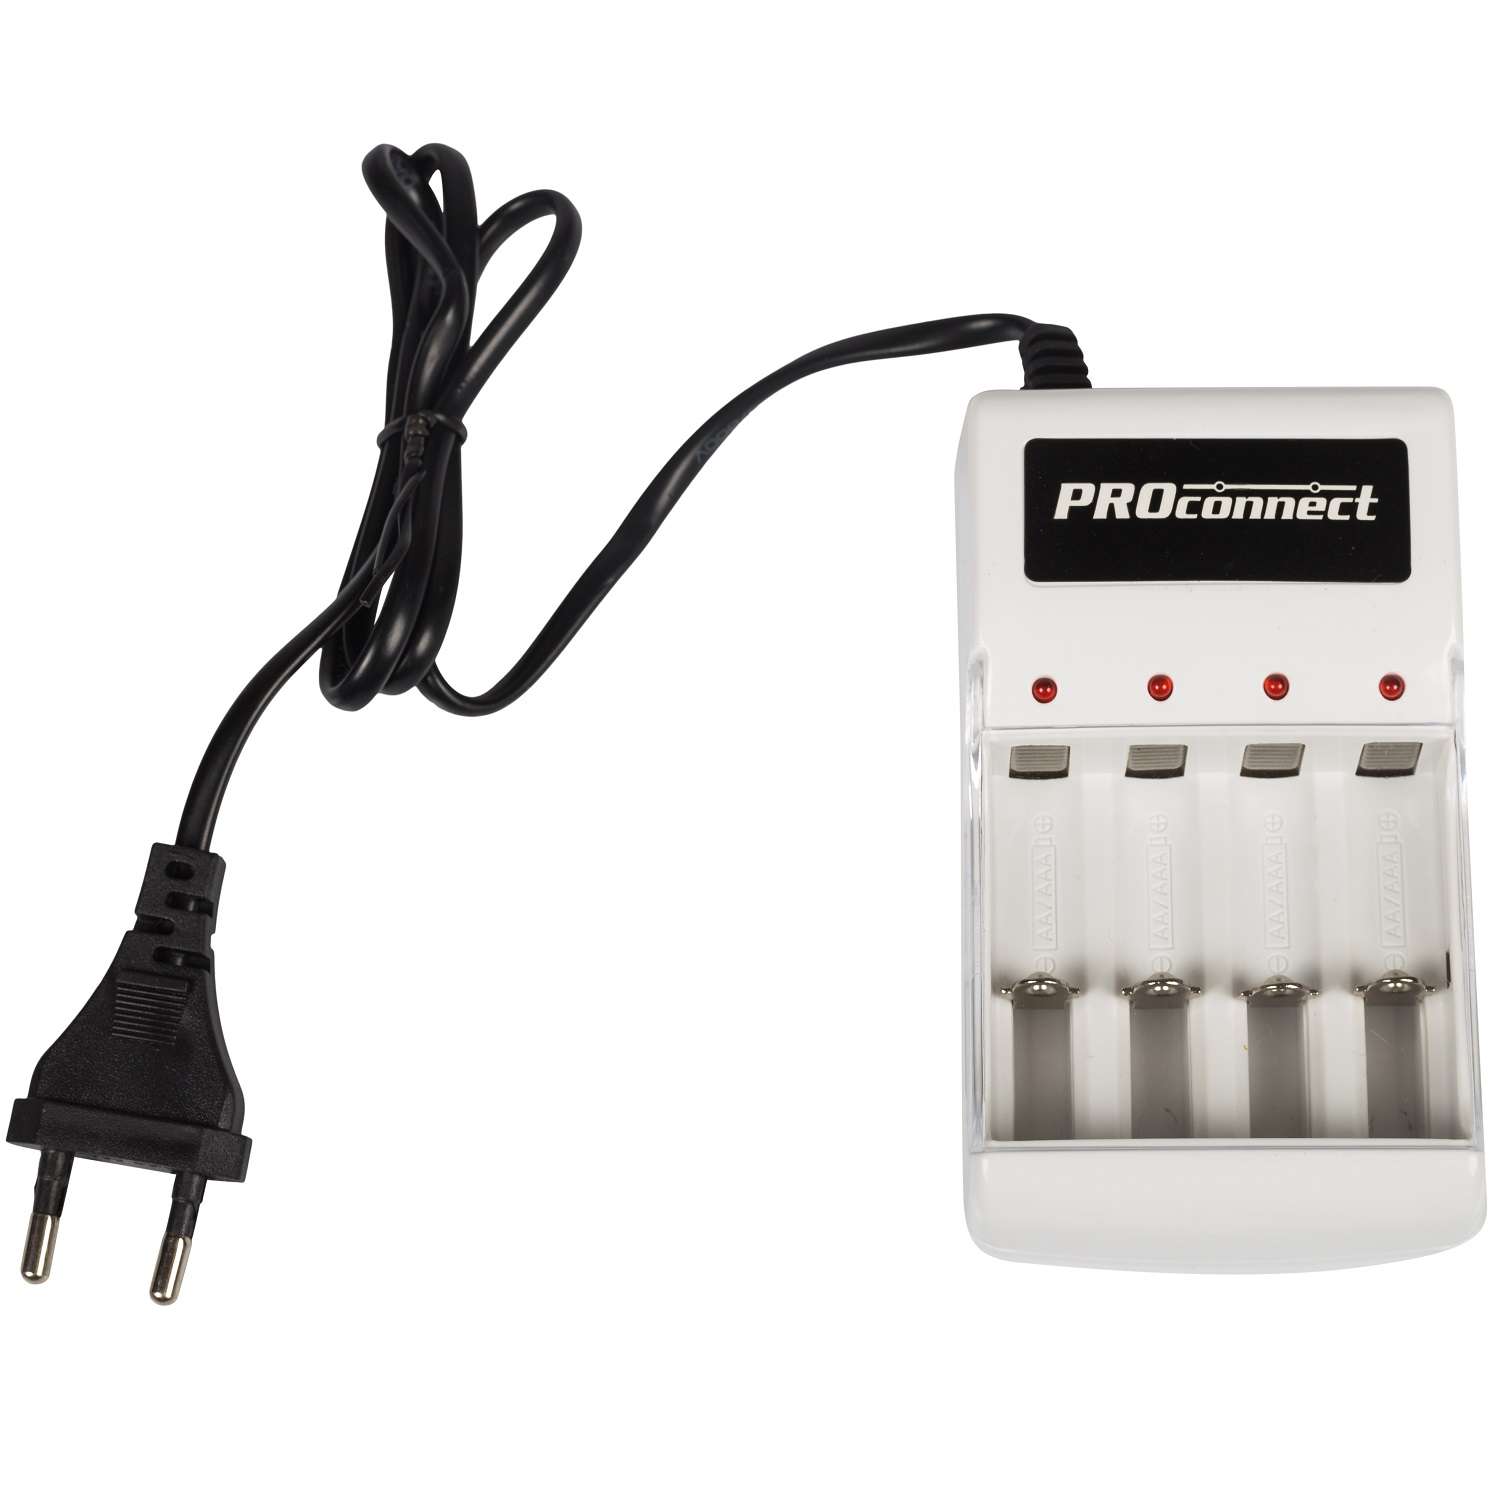 Зарядное устройство PROconnect для 2 или 4 аккумуляторов АА/ААА - фото 1